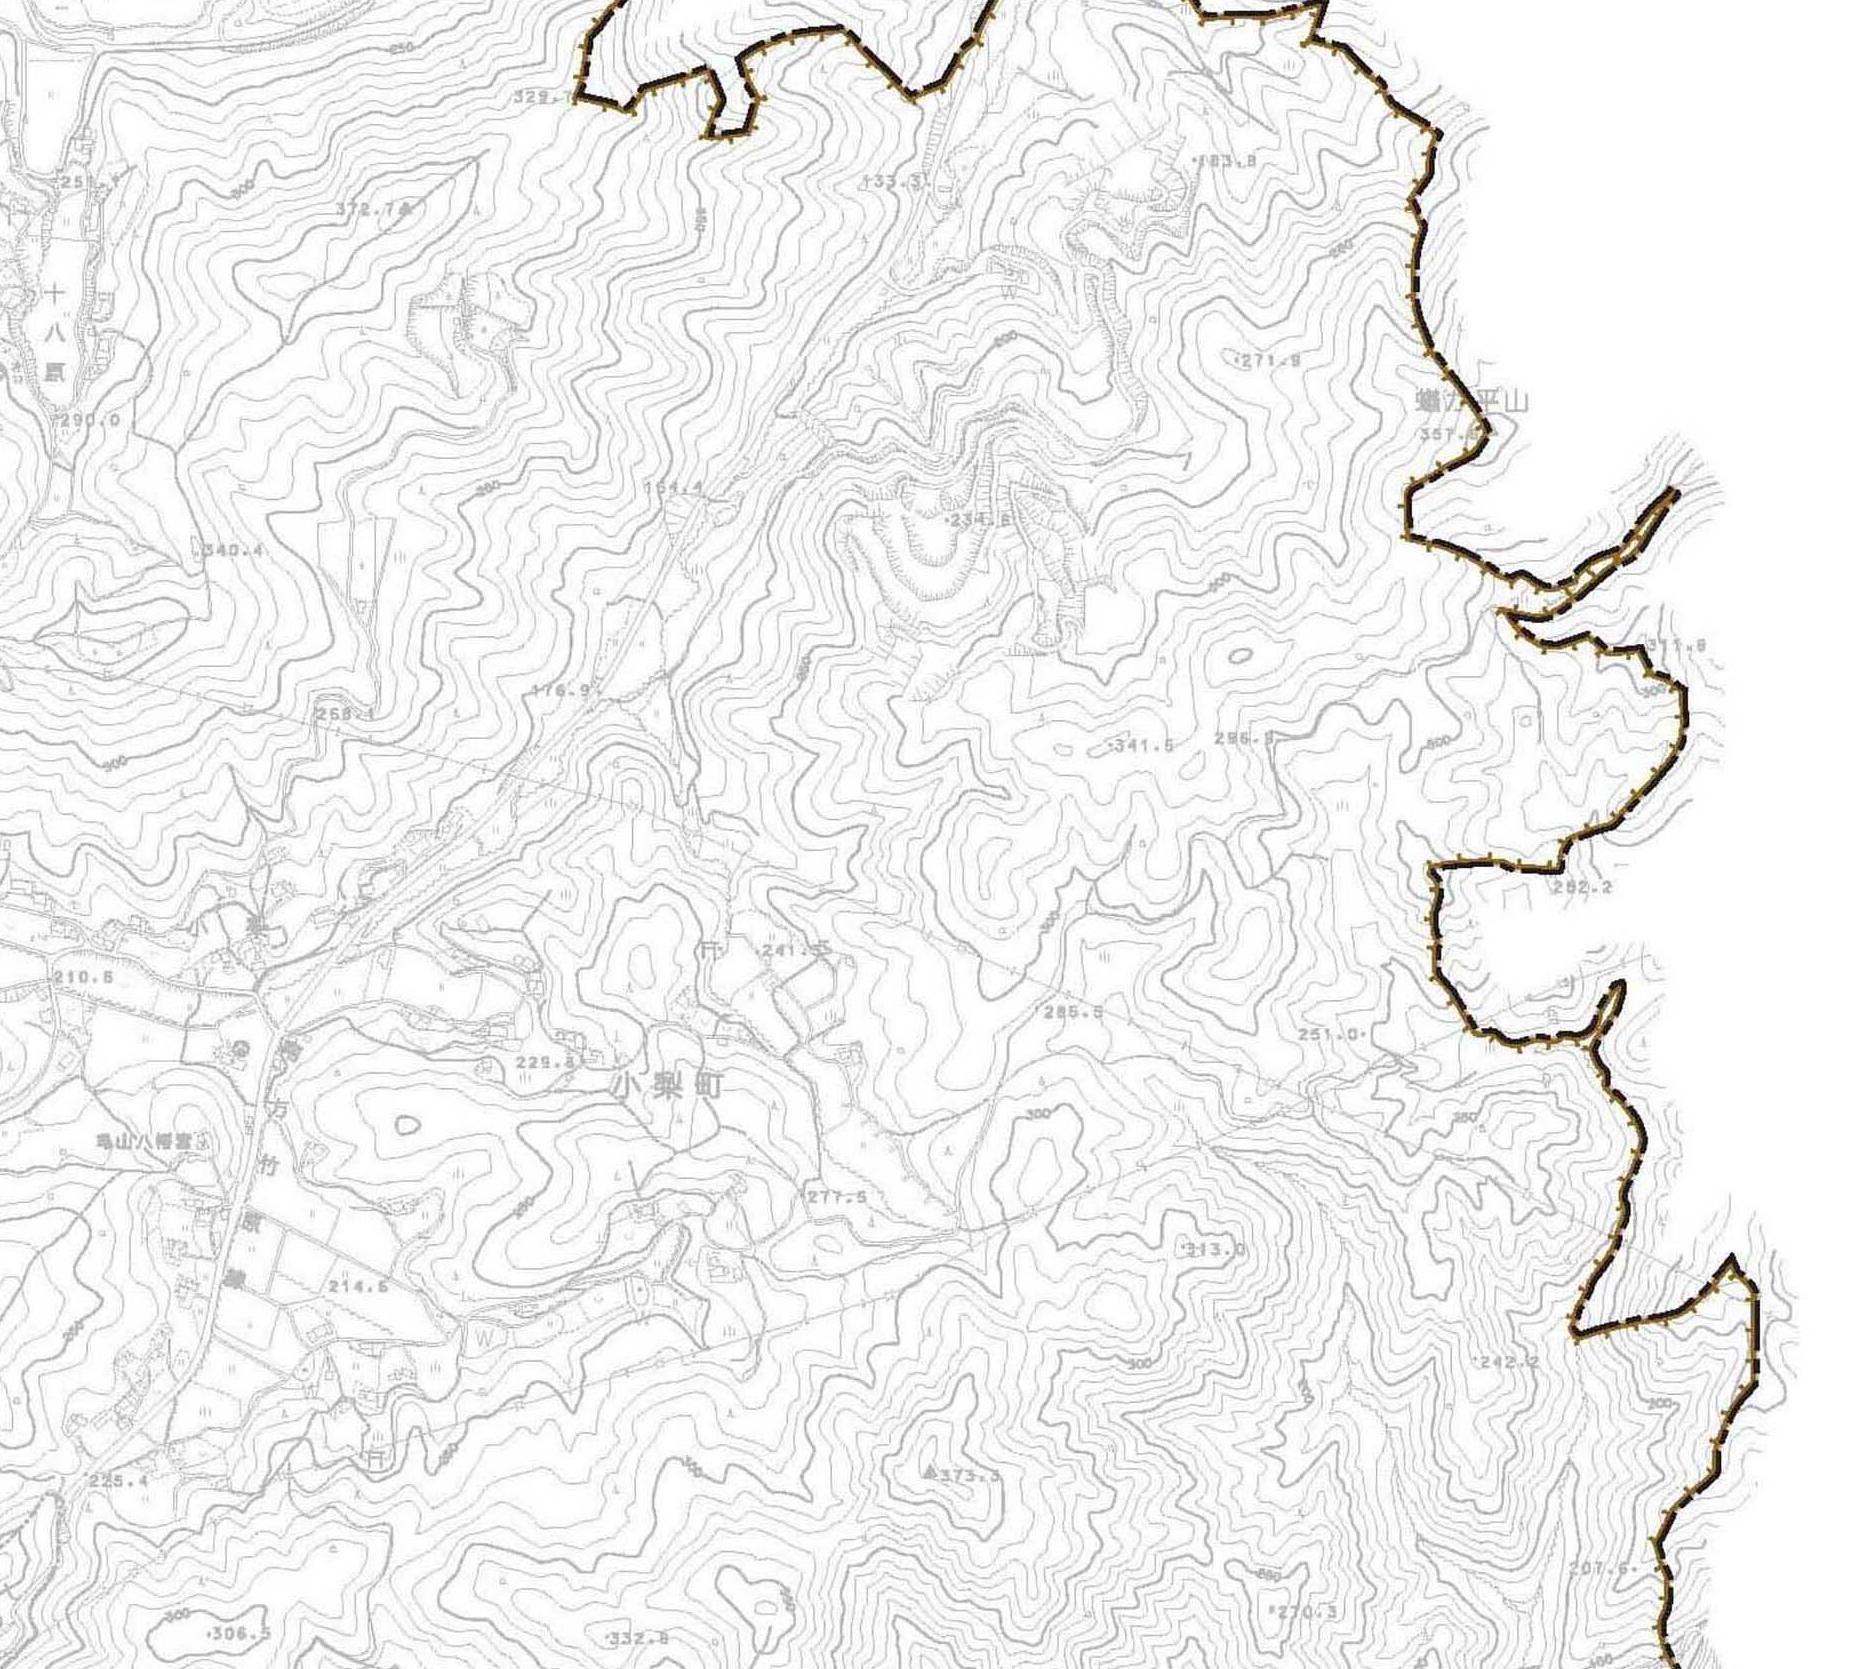 都市計画図g04の地図画像